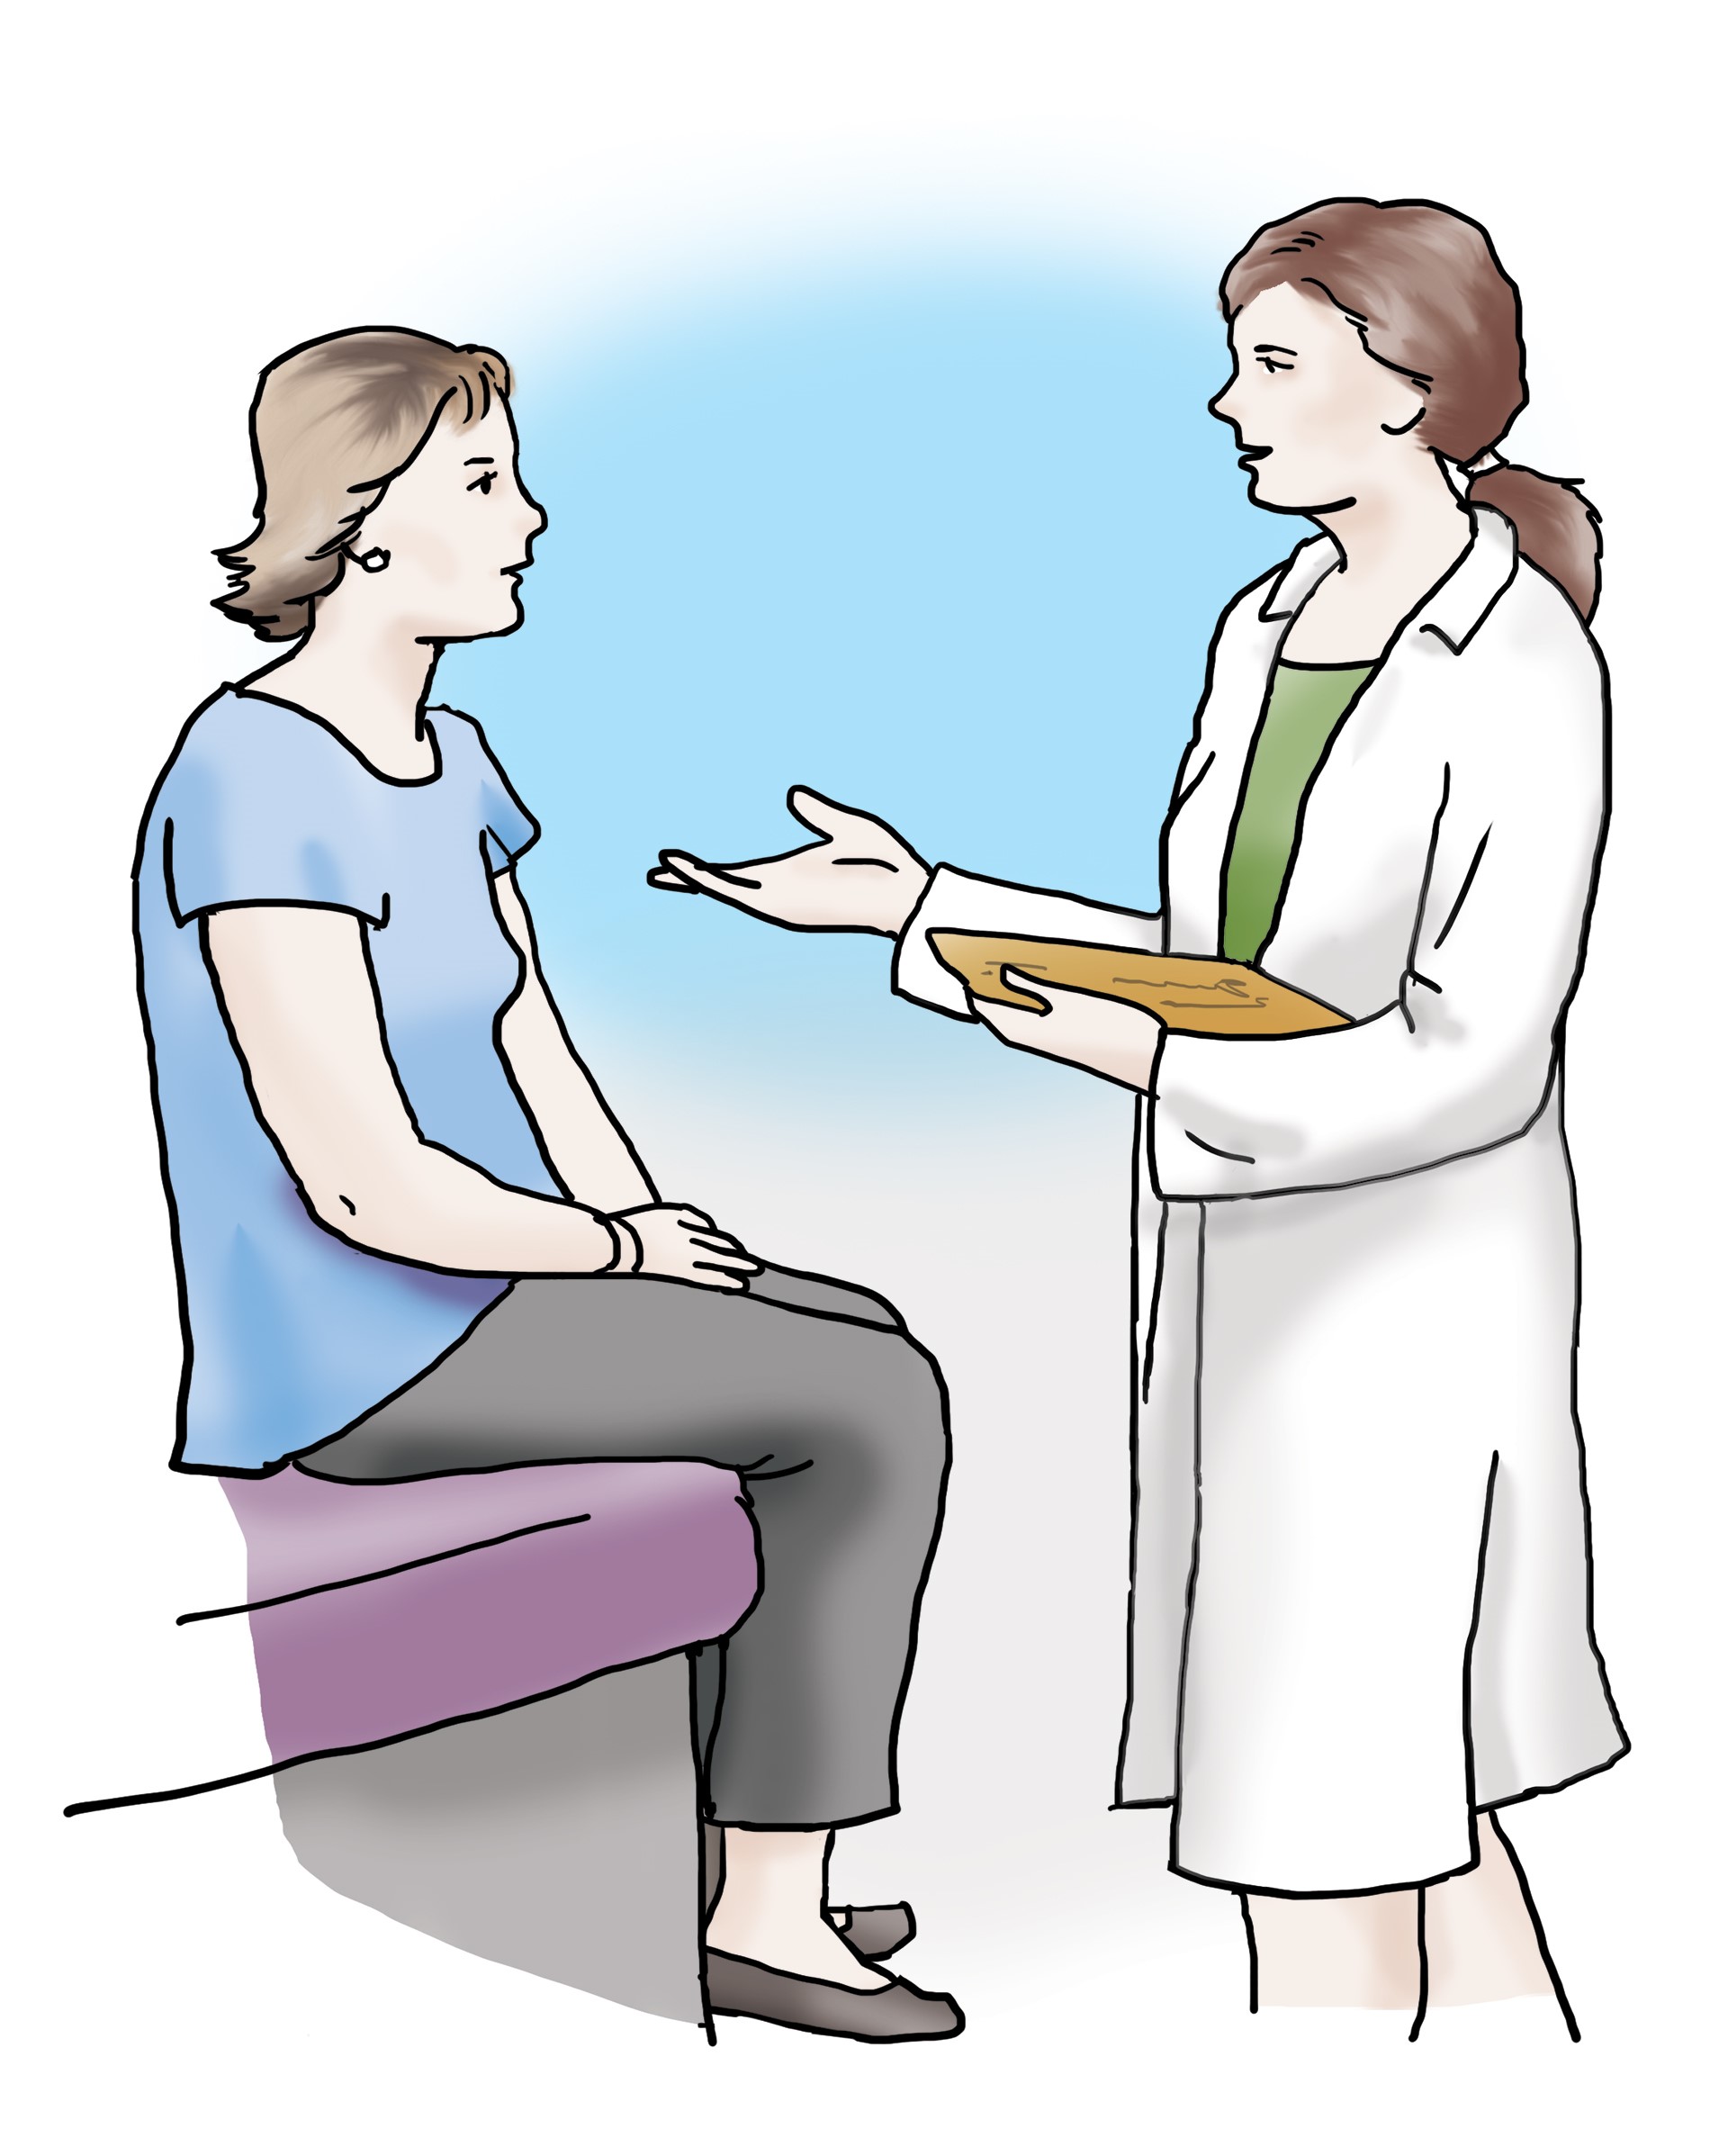 Ärztin unterhält sich mit ihrer Patientin. Die Ärztin erklärt der Patientin etwas und hat ein Klemmbrett in der Hand. 